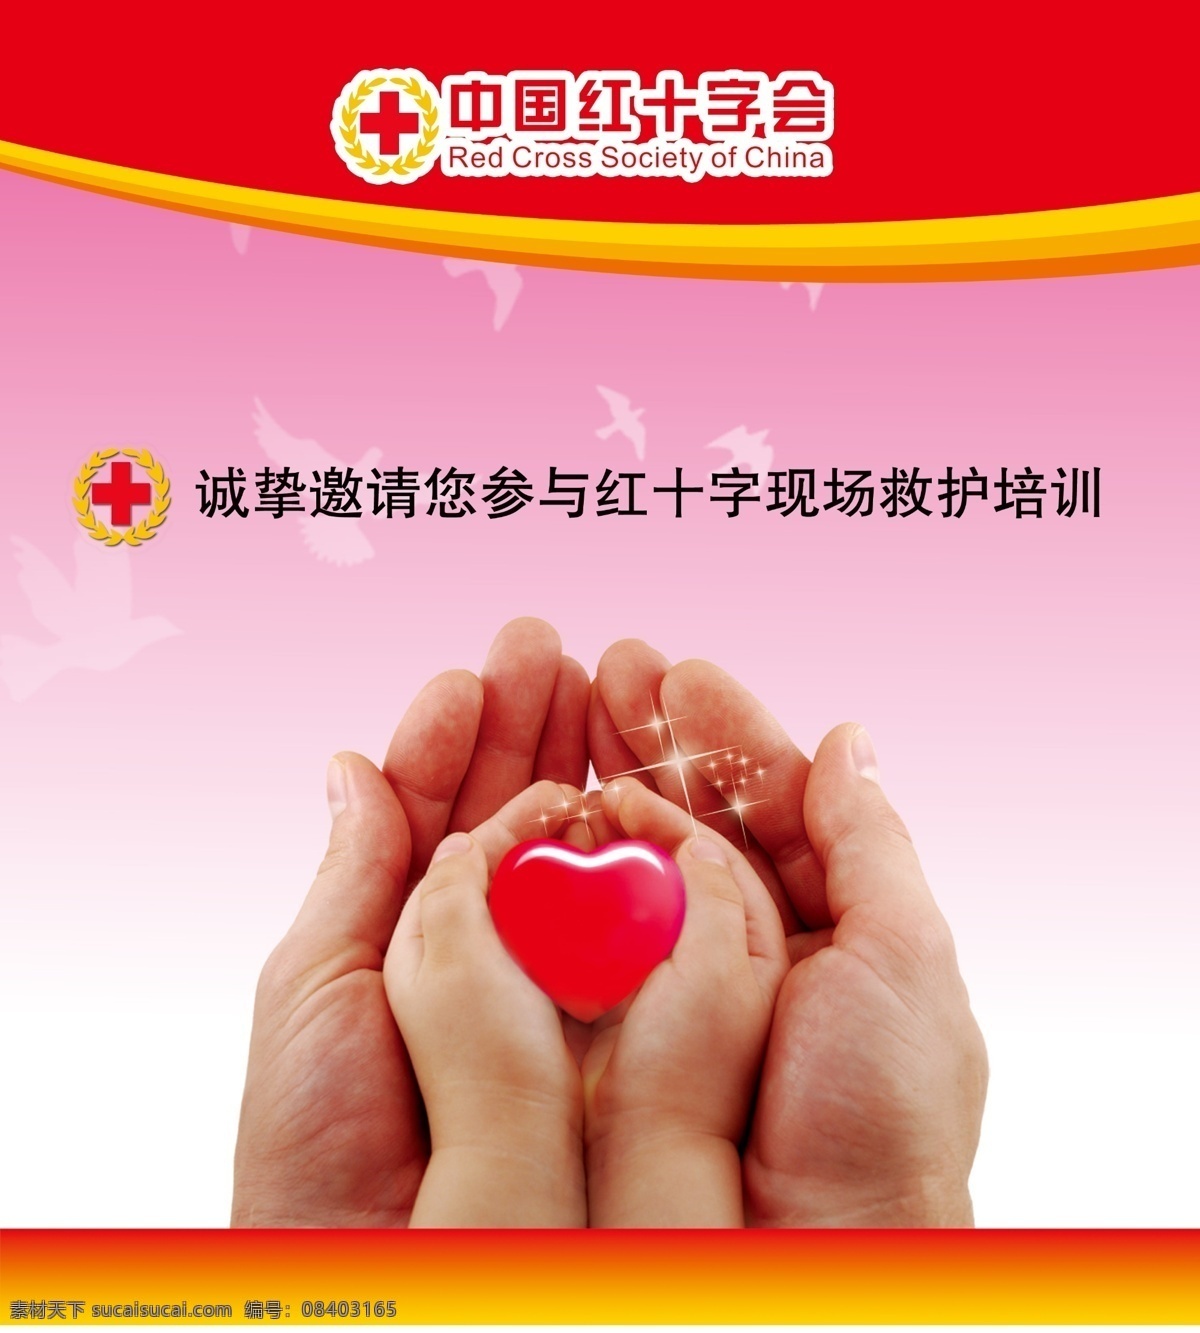 红十字会 宣传 系列 海报 中国红十字会 画报 红十字在行动 人道 博爱 奉献 慈善 仁爱 志愿者 服务 救灾 广告设计模板 源文件